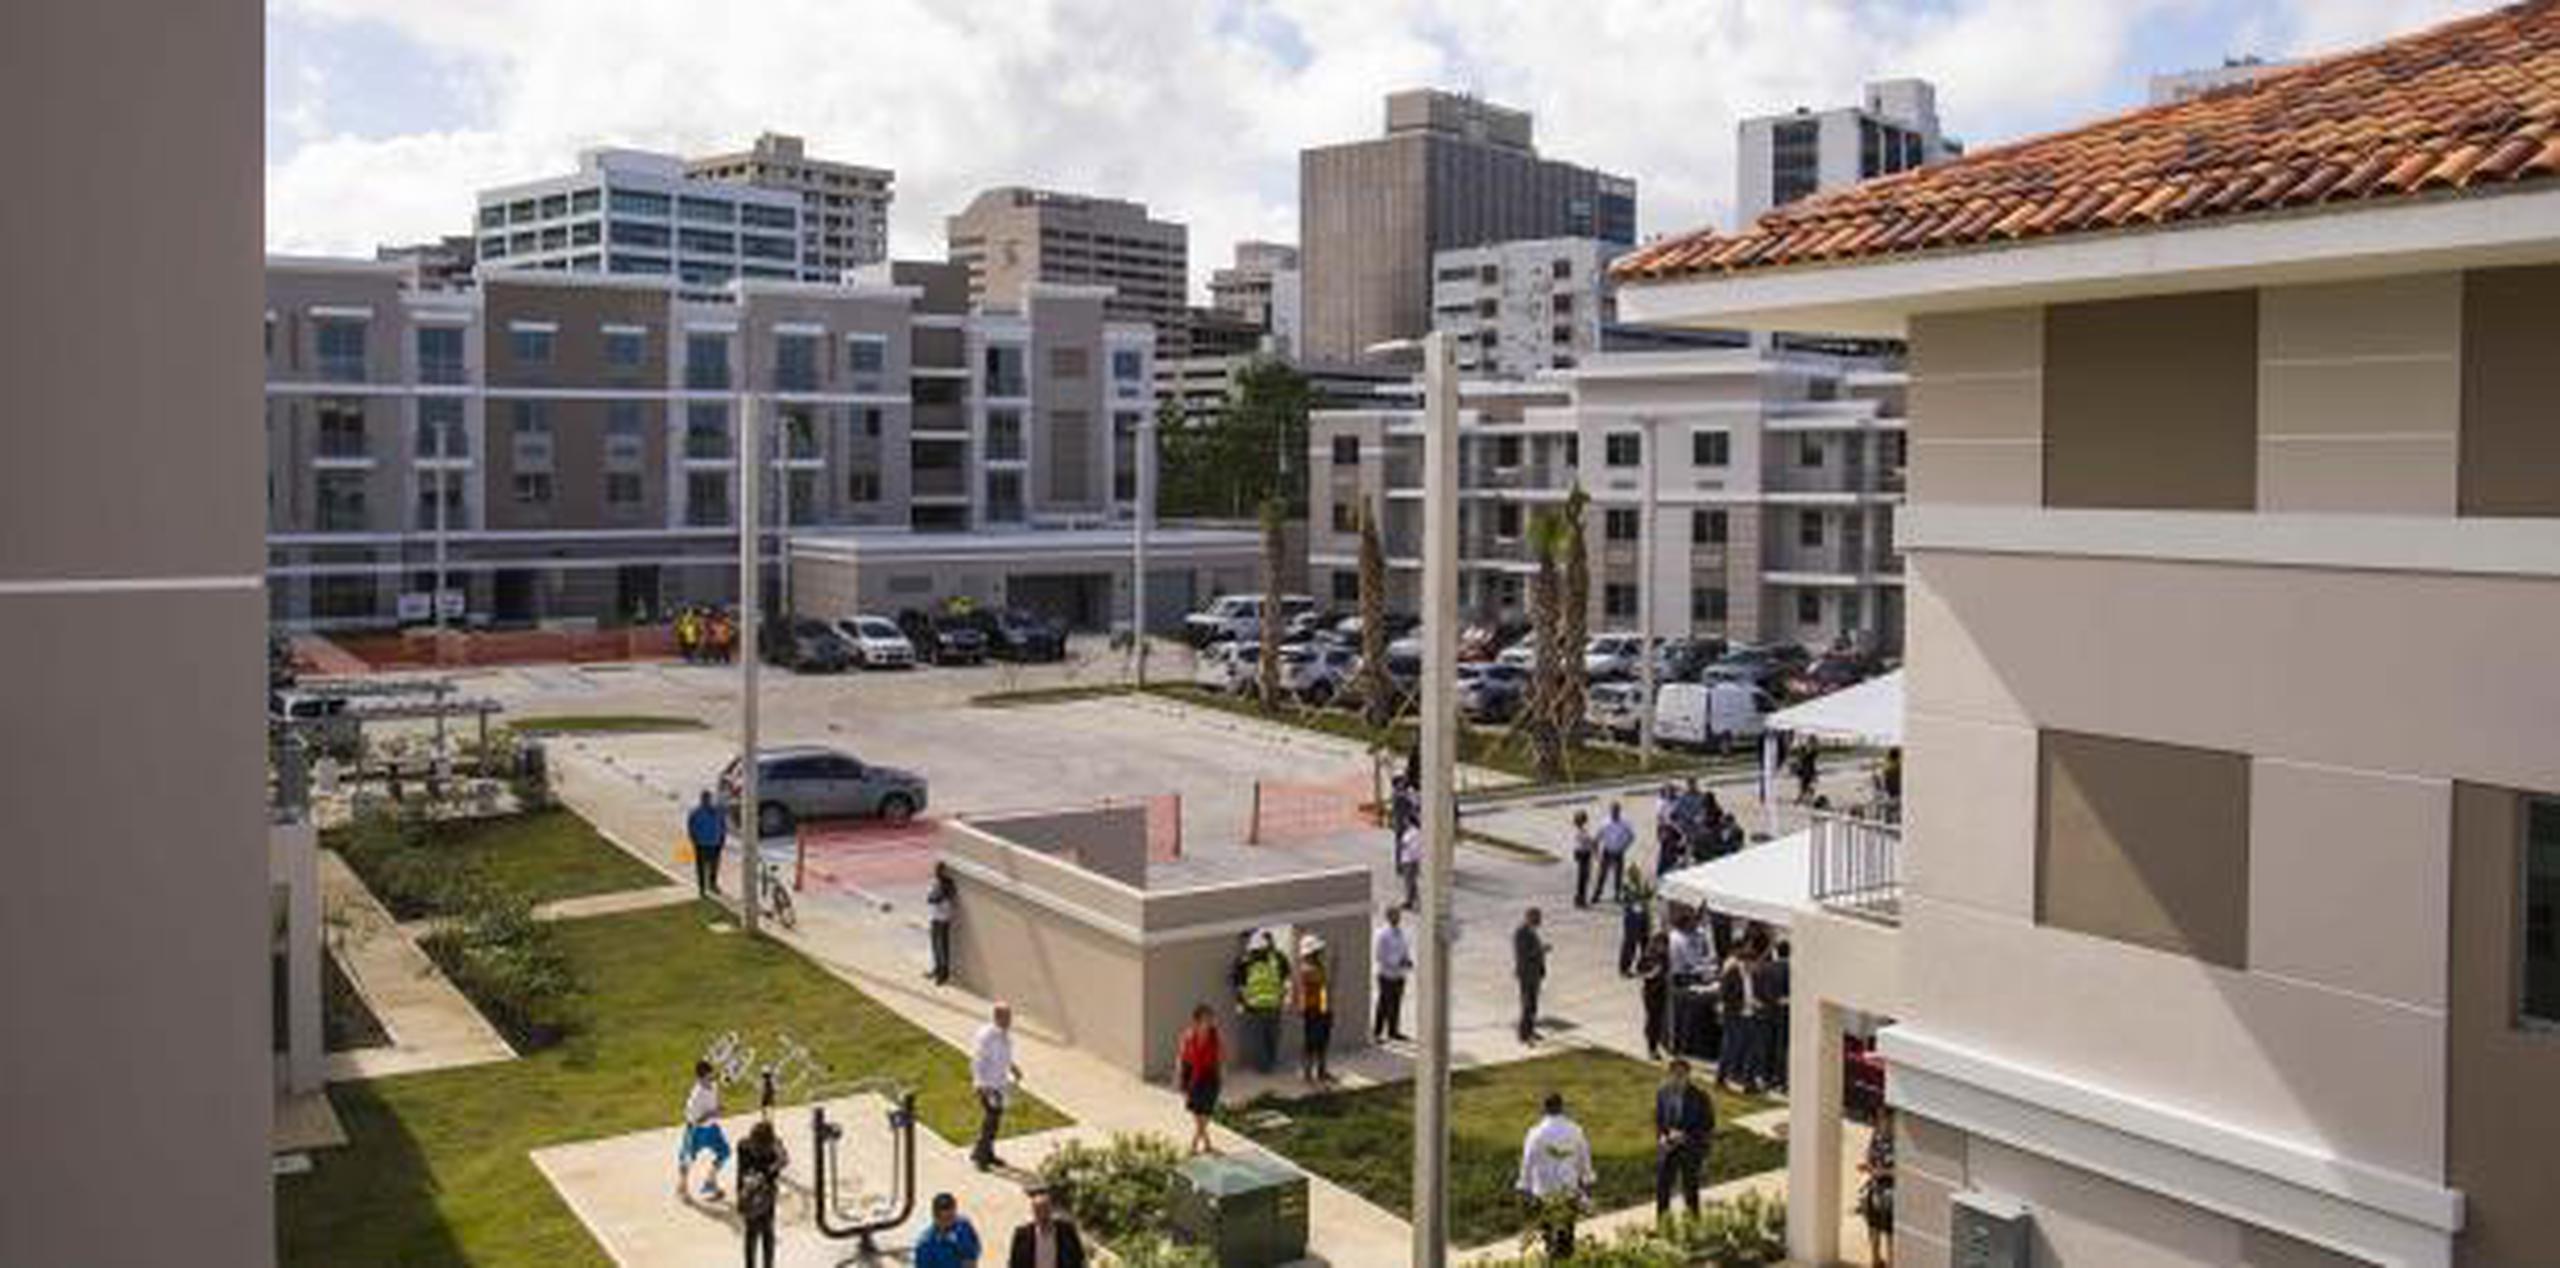 Este es el nuevo complejo de vivienda donde estaba ubicado Las Gladiolas en Hato Rey . (Archivo)